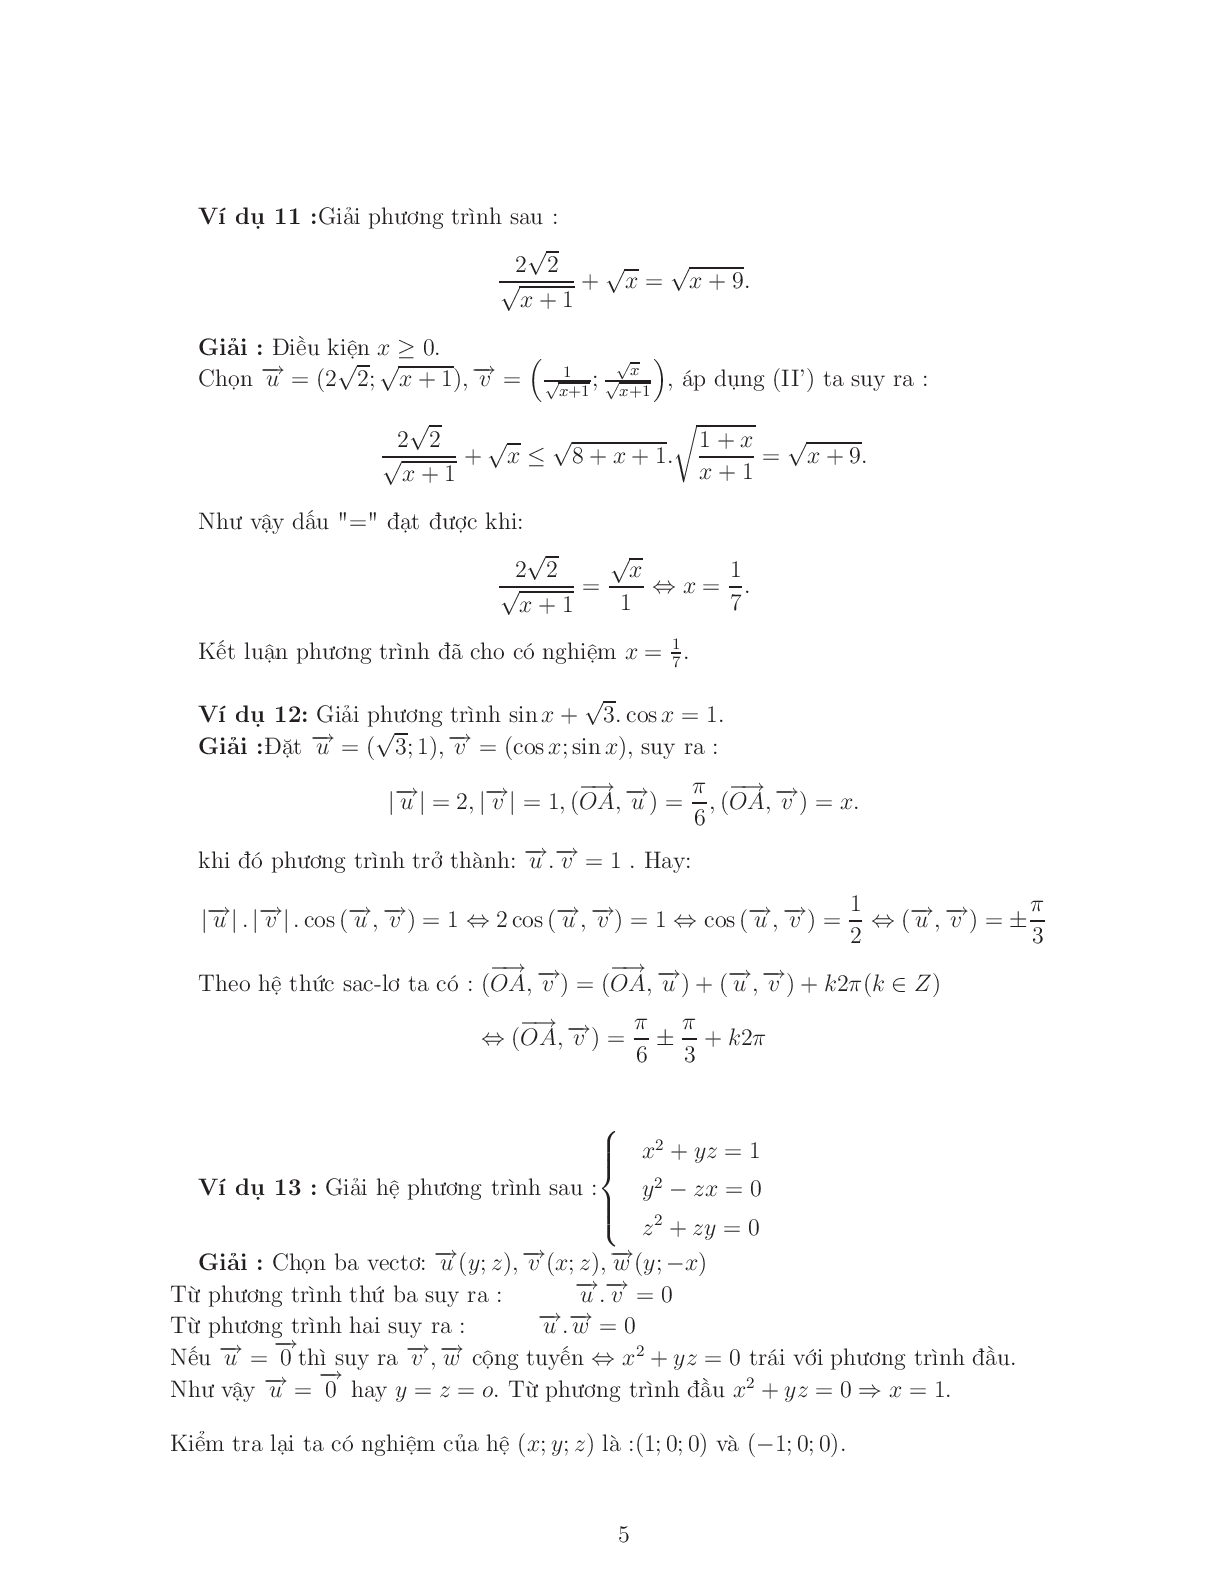 Giải phương trình – bất phương trình bằng phương pháp Vector (trang 5)